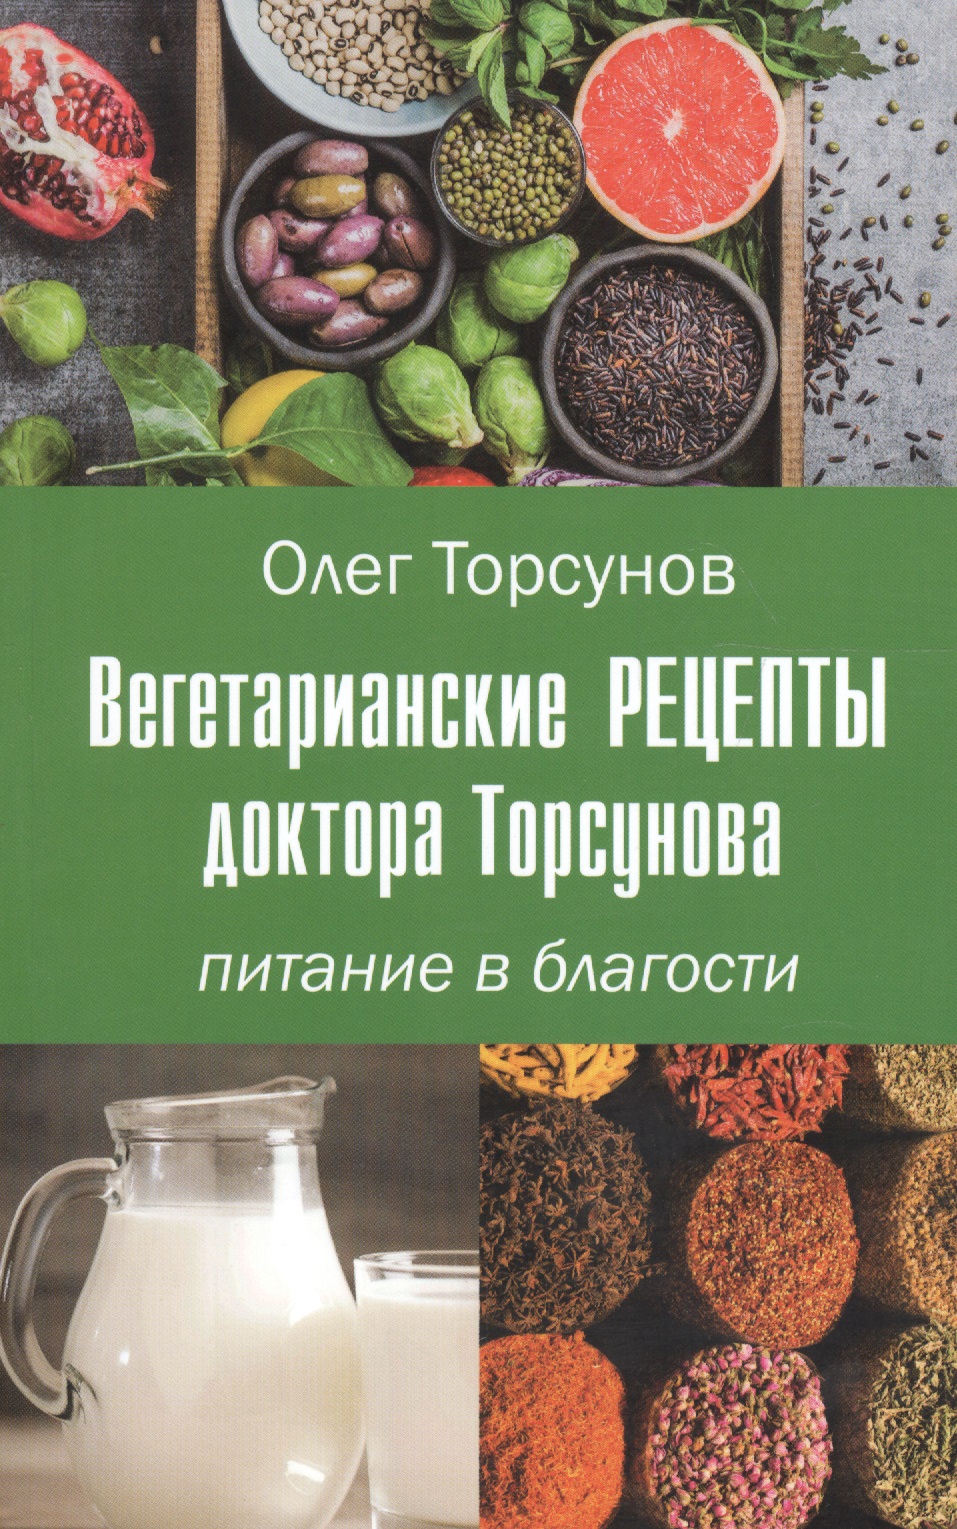 Торсунов Олег Геннадьевич - Вегетарианские рецепты доктора Торсунова. Питание в Благости